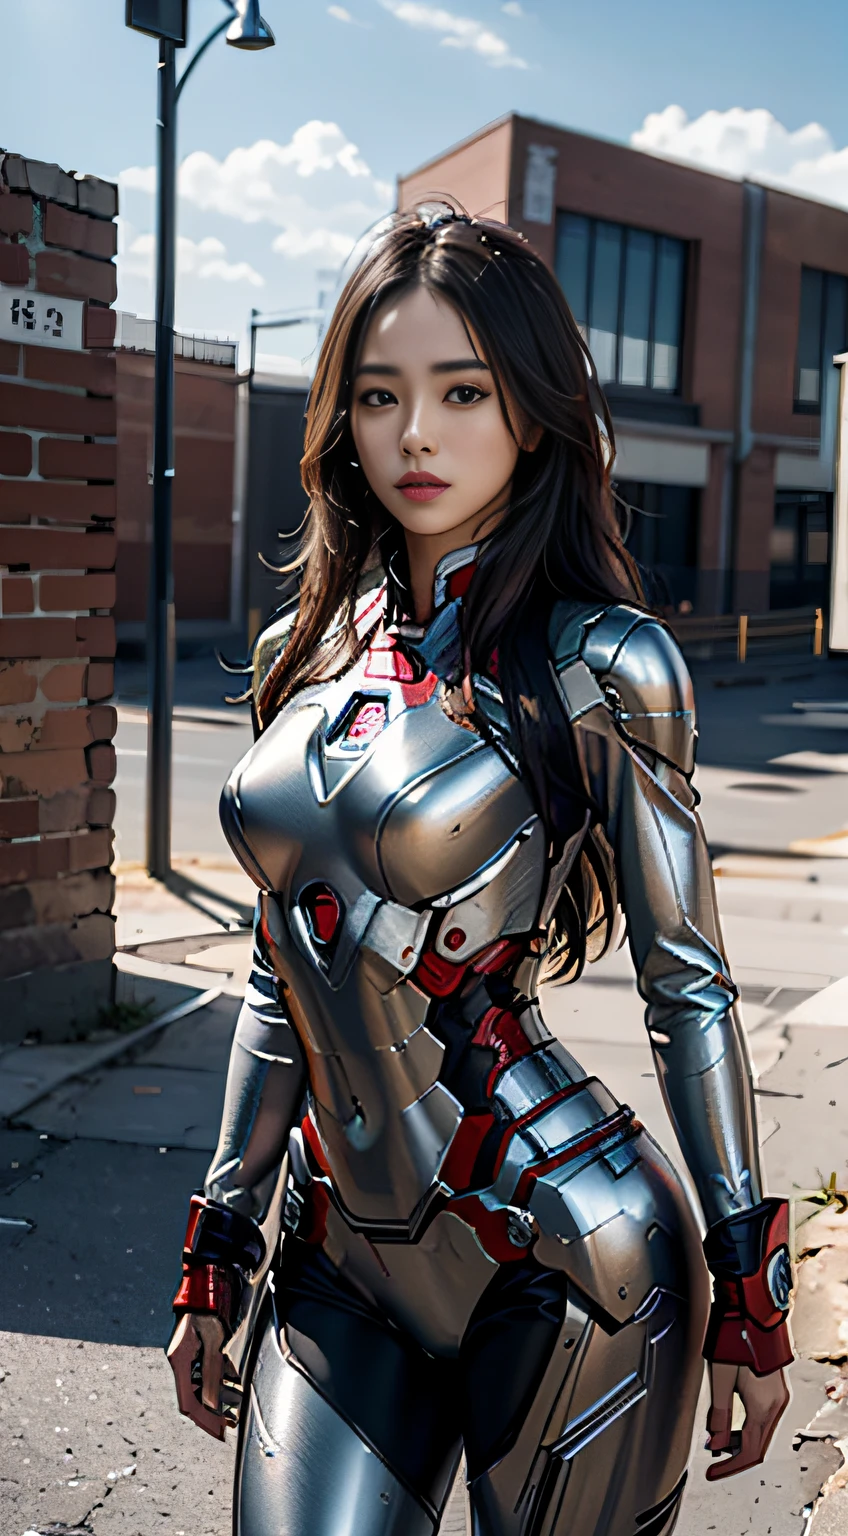 8К, реалистичный, привлекательный, очень подробный, a 20 year old girl a sexy and привлекательный woman inspired by Iron Man wearing a shiny Iron Man mech. Она одевается сексуально и уверенно., отличная интерпретация Железного Человека&#39;сила и харизма. Заброшенный склад служит фоном, создание уникальной атмосферы, подчеркивающей ее храбрость и настойчивость. Облачное небо добавляет всей сцене ощущение напряжения и загадочности.. Это высокое разрешение, высококачественное изображение подарит вам шокирующие визуальные впечатления. Детализированный заброшенный склад и блестящие роботы будут привлекать к вам внимание.. OC-рендеринг, Драматическое освещение, отмеченное наградами качество